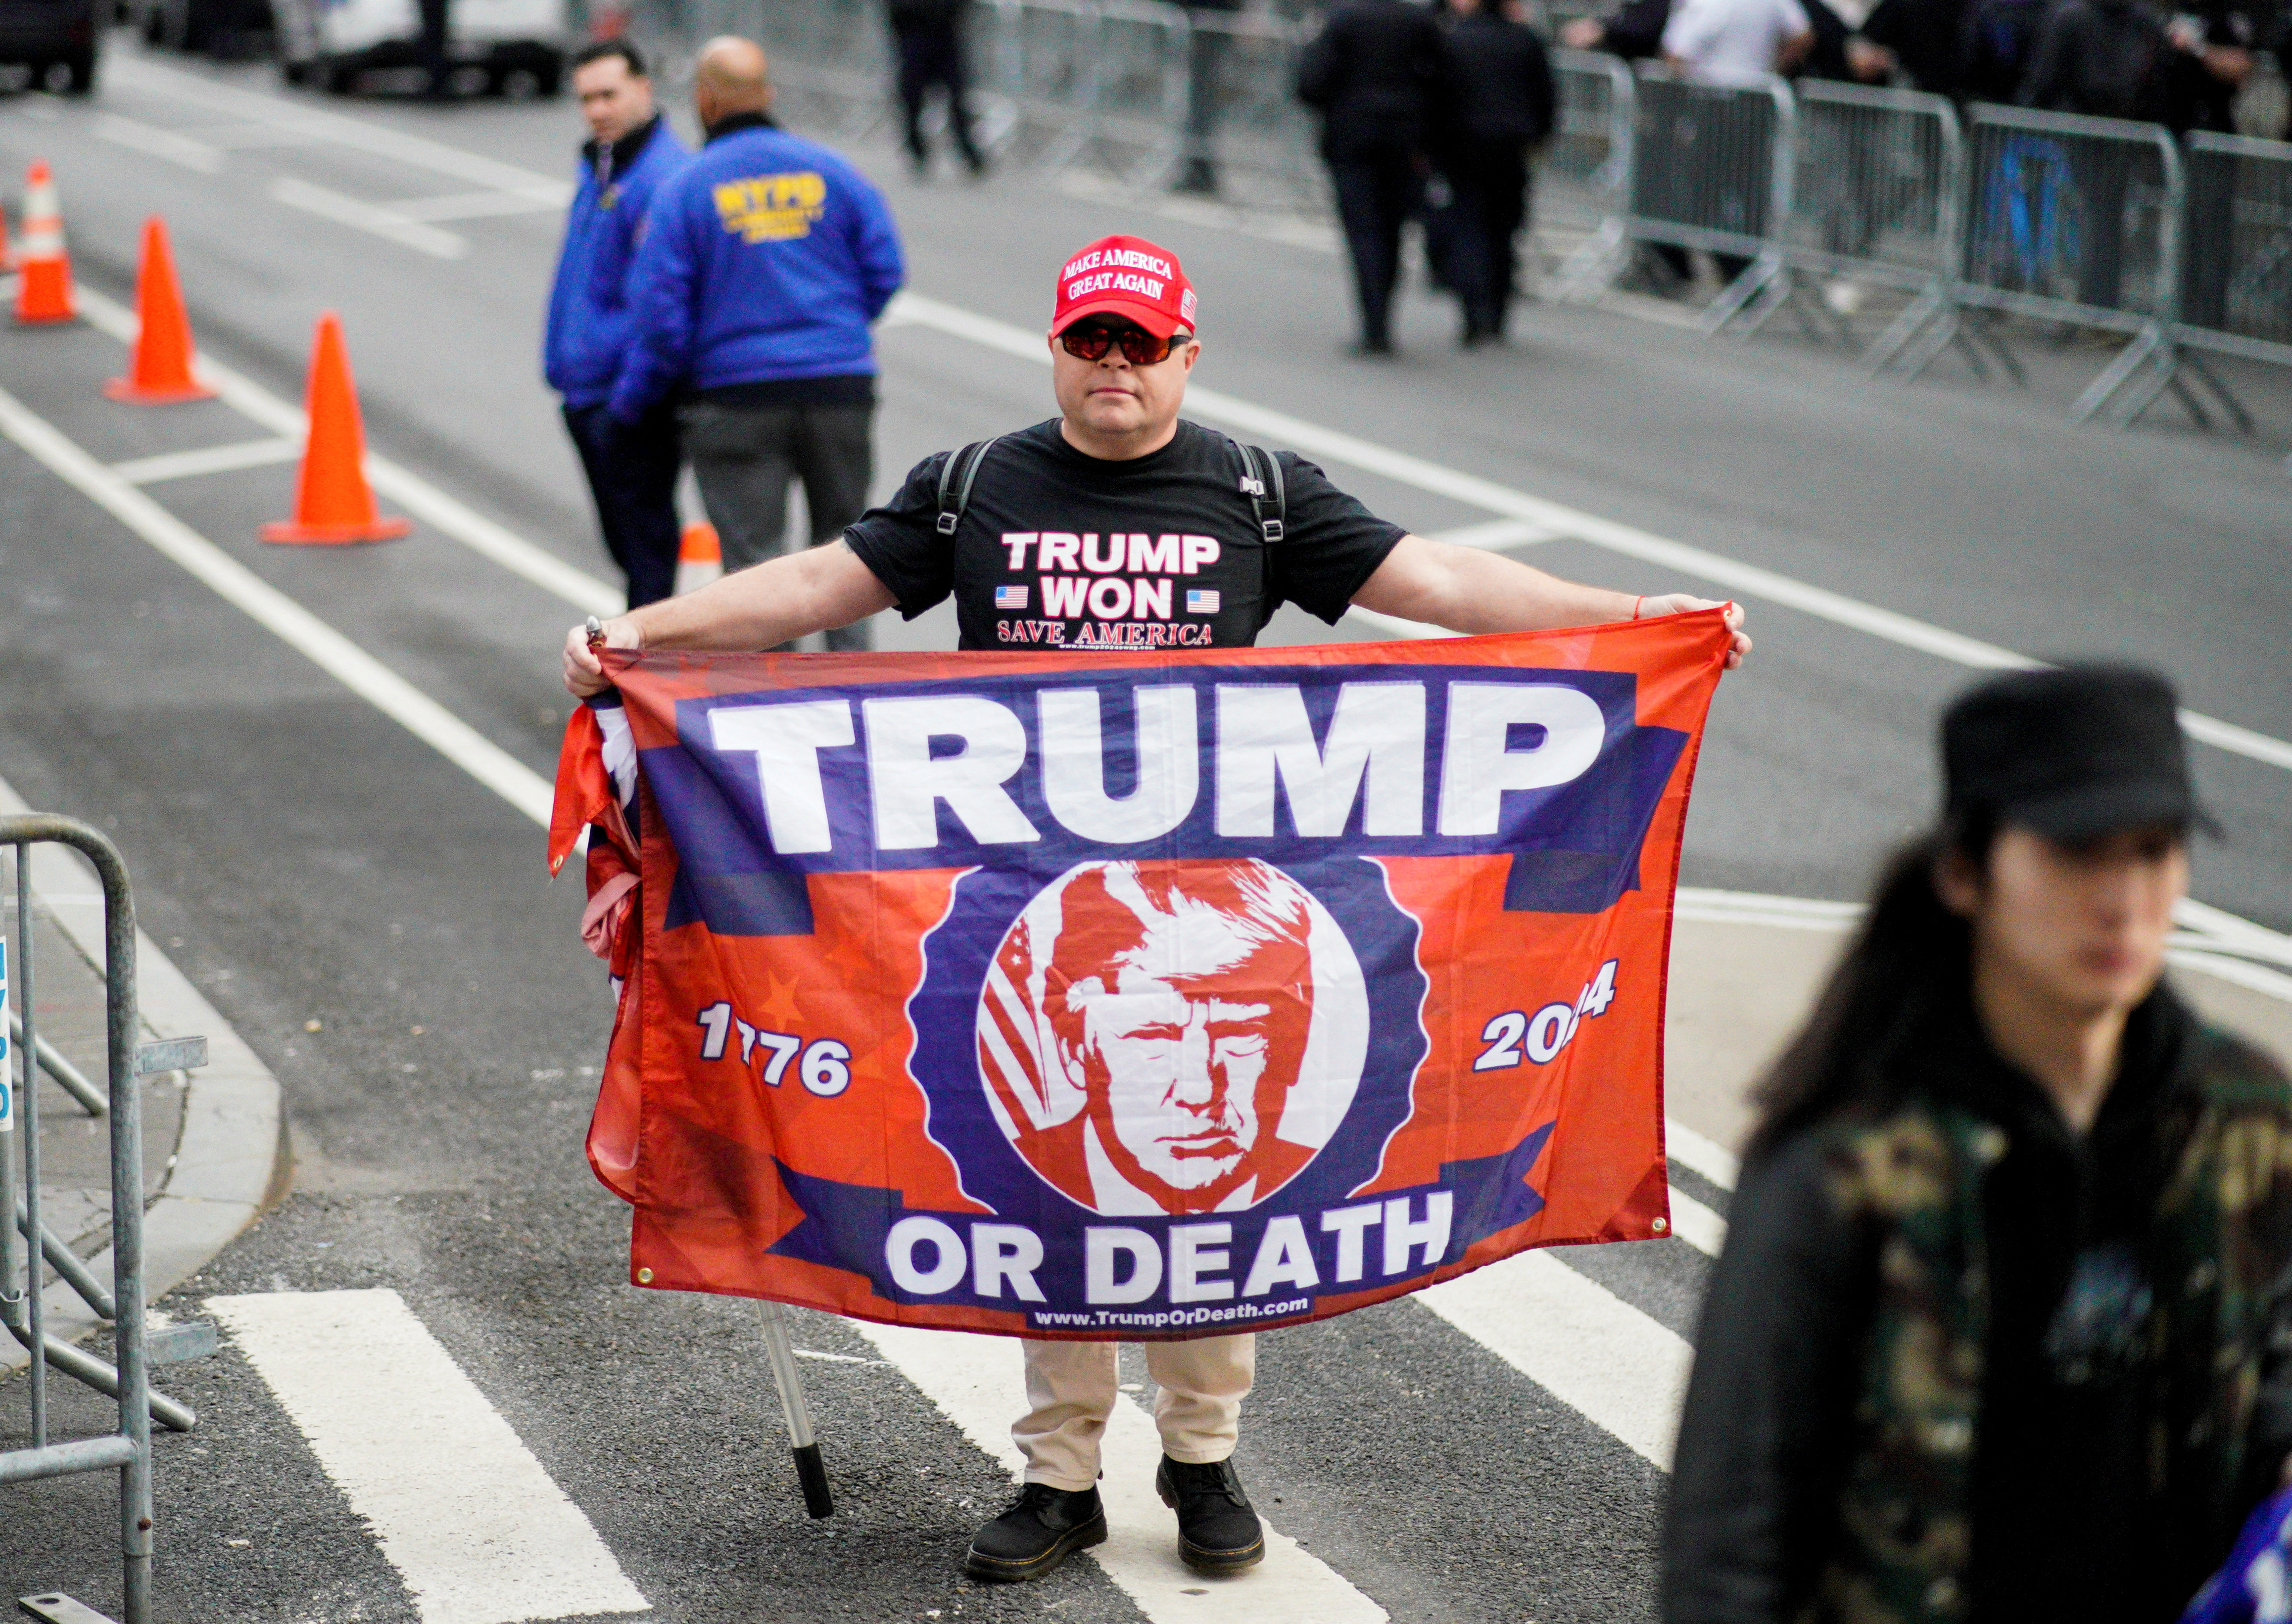 "Trump o muerte" en la bandera de un simpatizante republicano (Reuters)